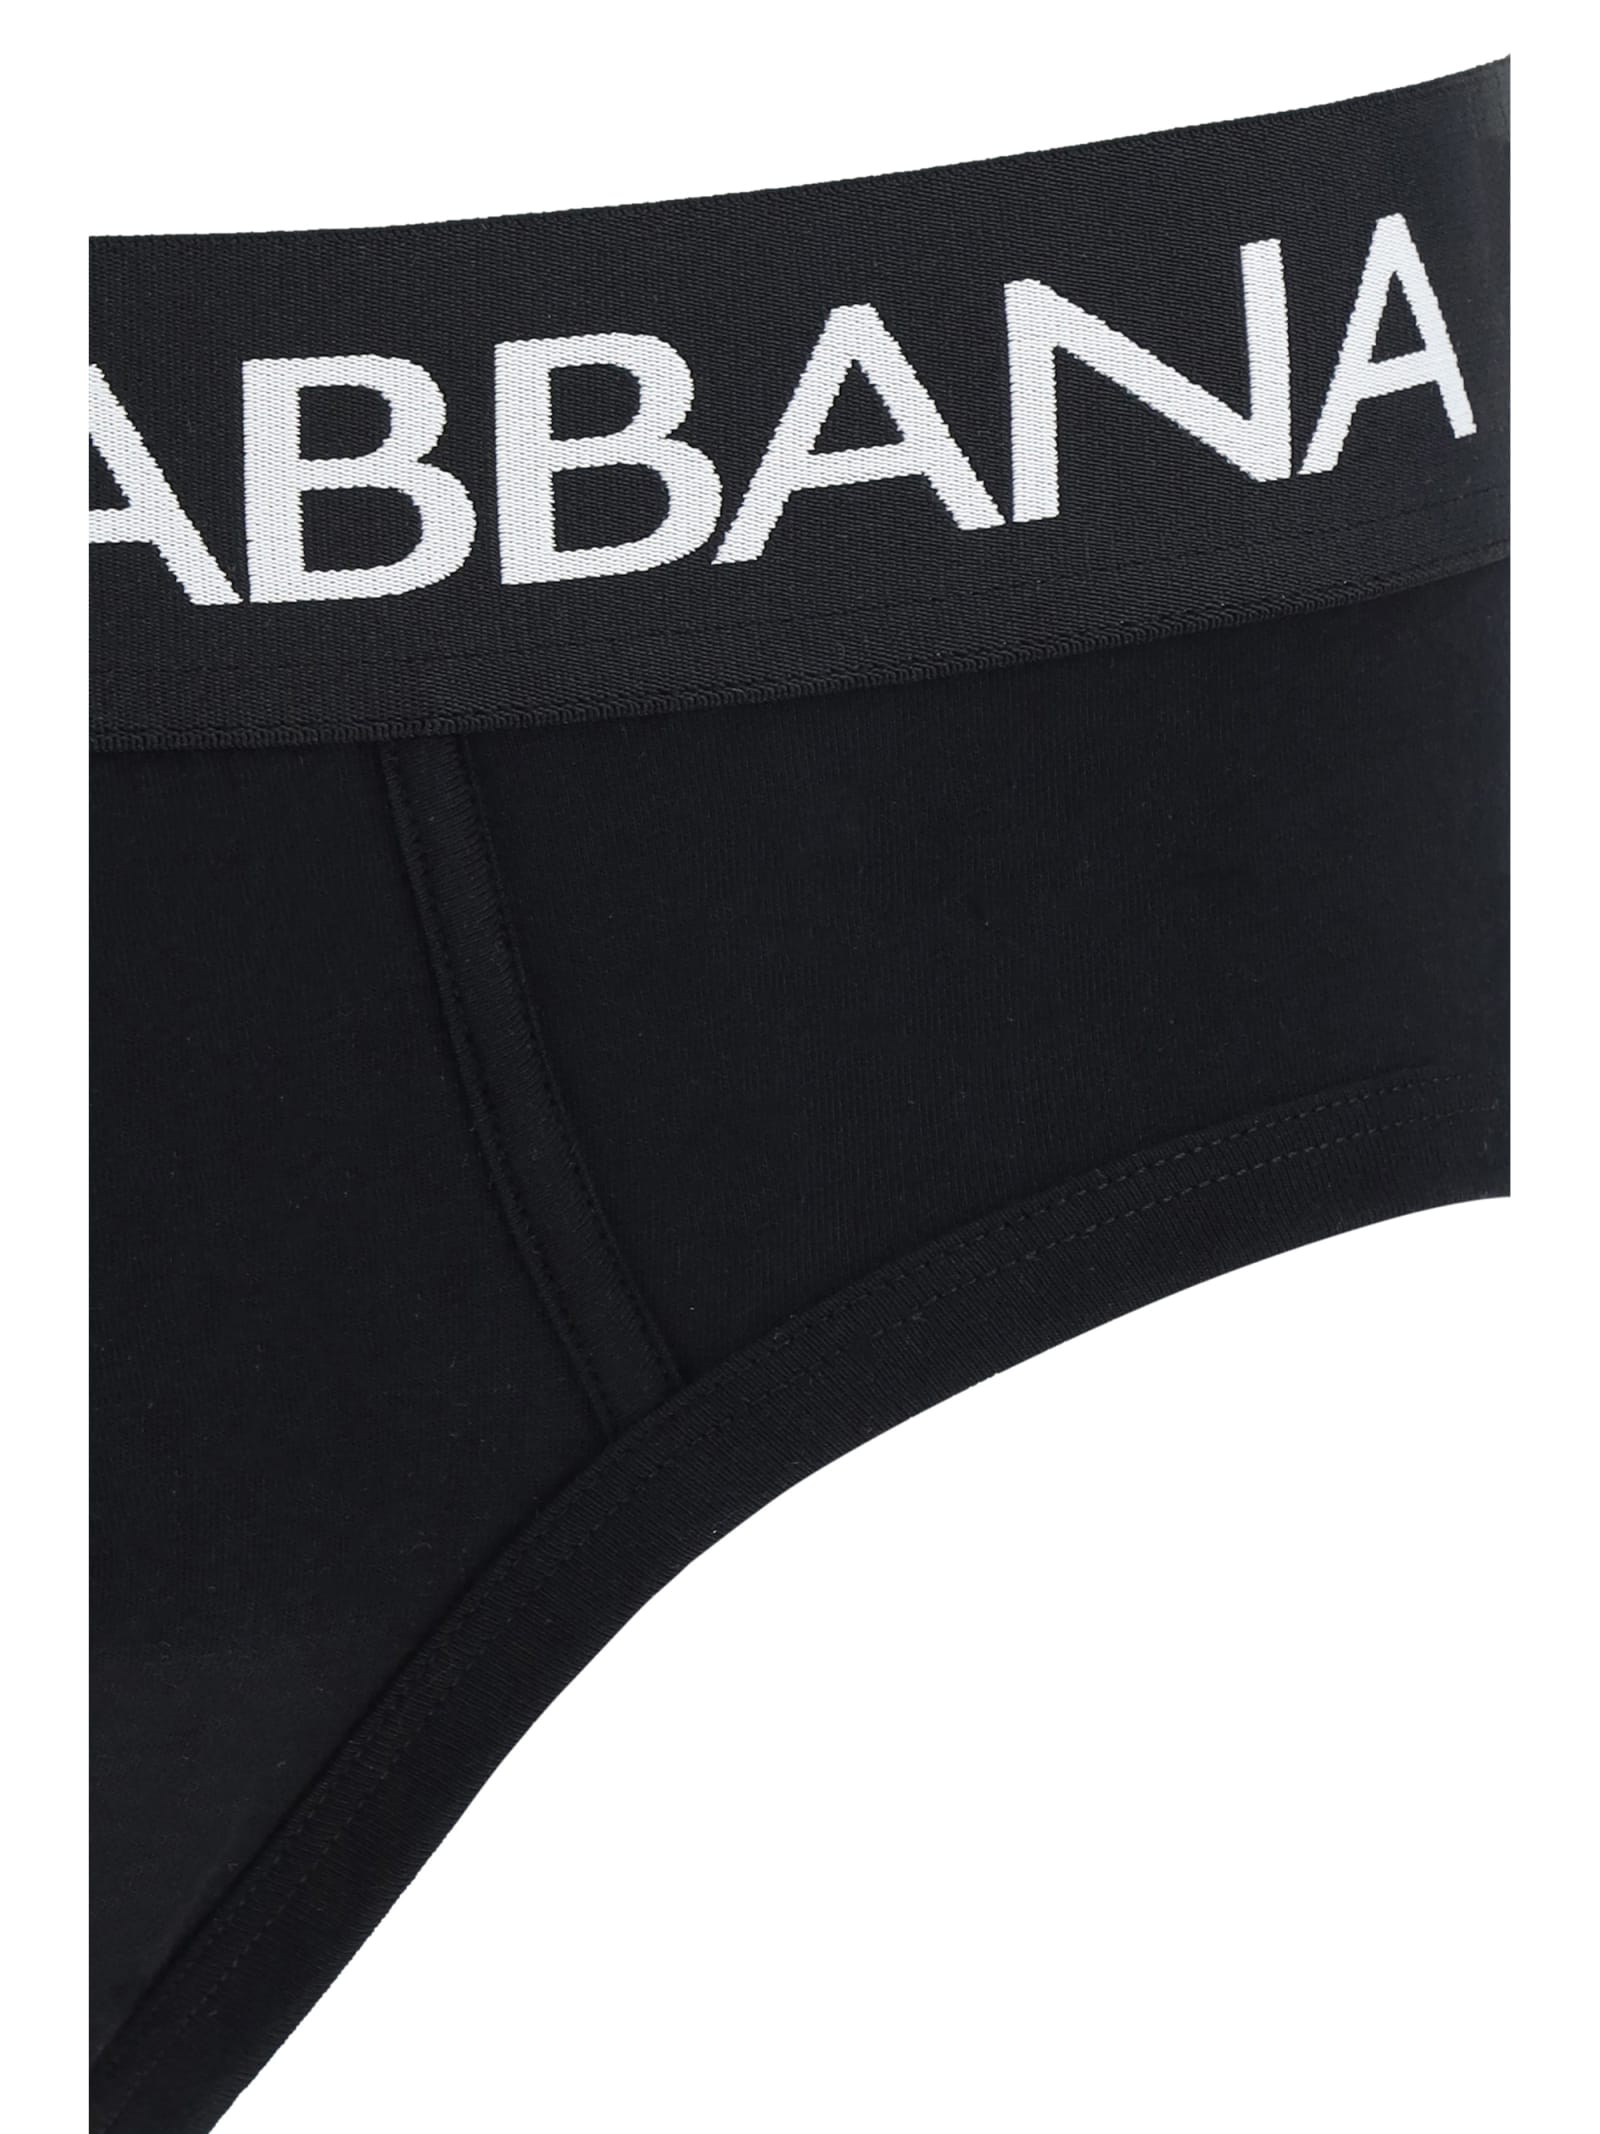 Shop Dolce & Gabbana Underwear Briefs In Nero